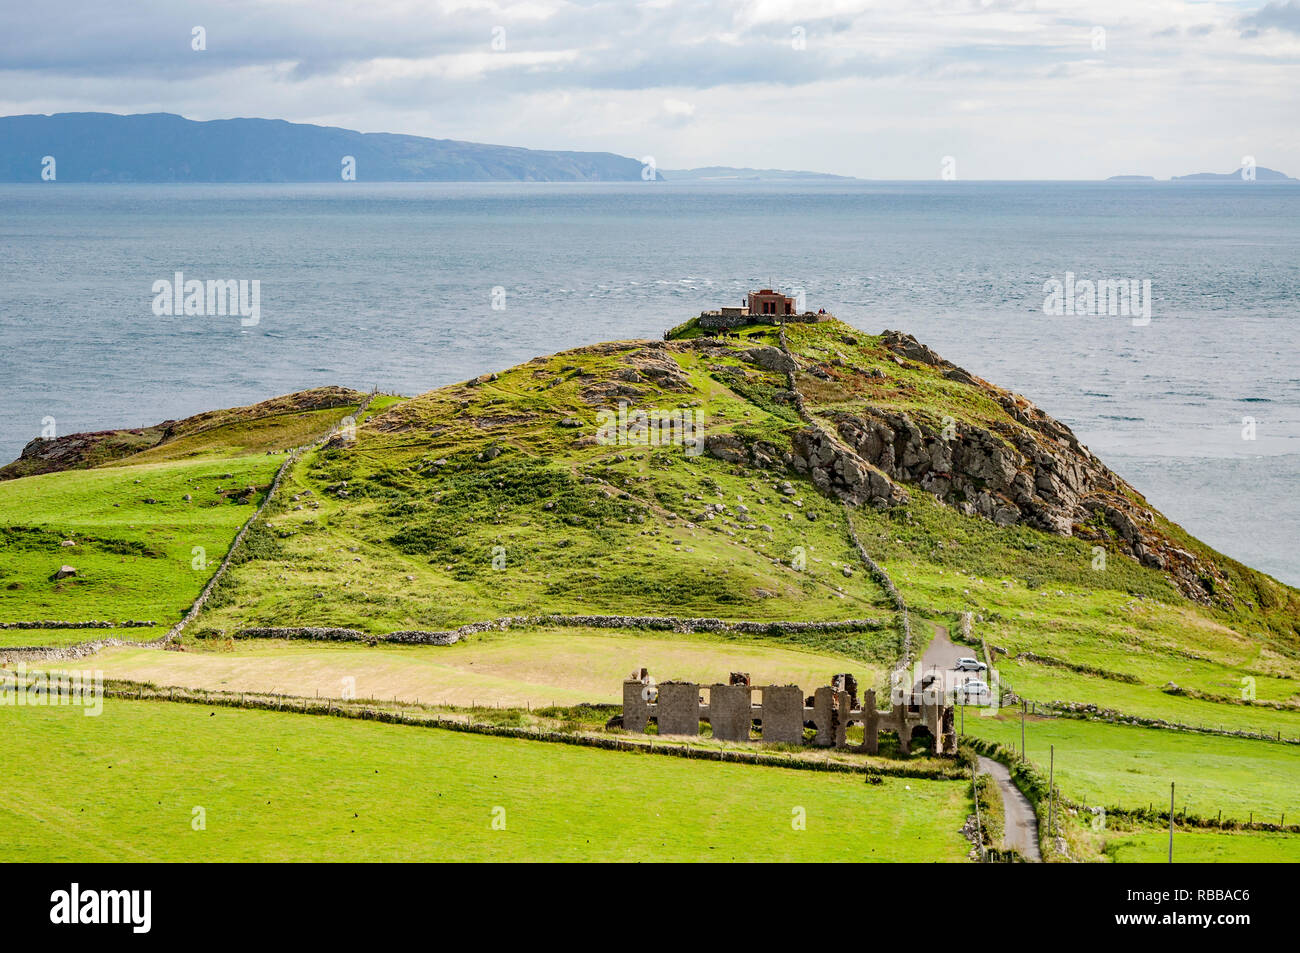 Torr Head pointe, falaise rocheuse et péninsule avec ruines du vieux fort dans le comté d'Antrim, Irlande du Nord, près de Ballycastle. Loin de voir l'île de Rathlin Banque D'Images